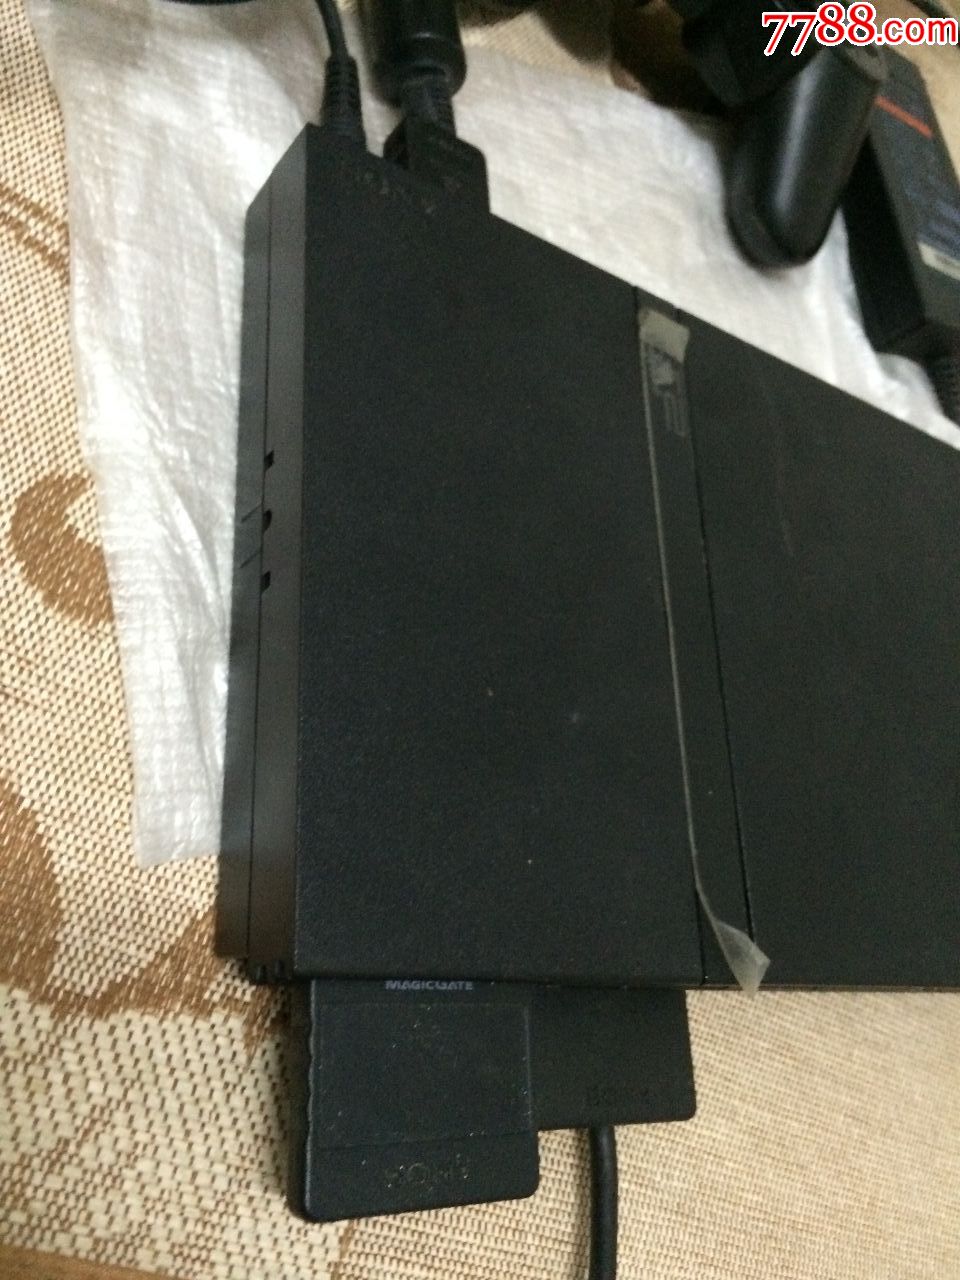 一台带纸箱Sony索尼PS2薄机型电视游戏机,3天